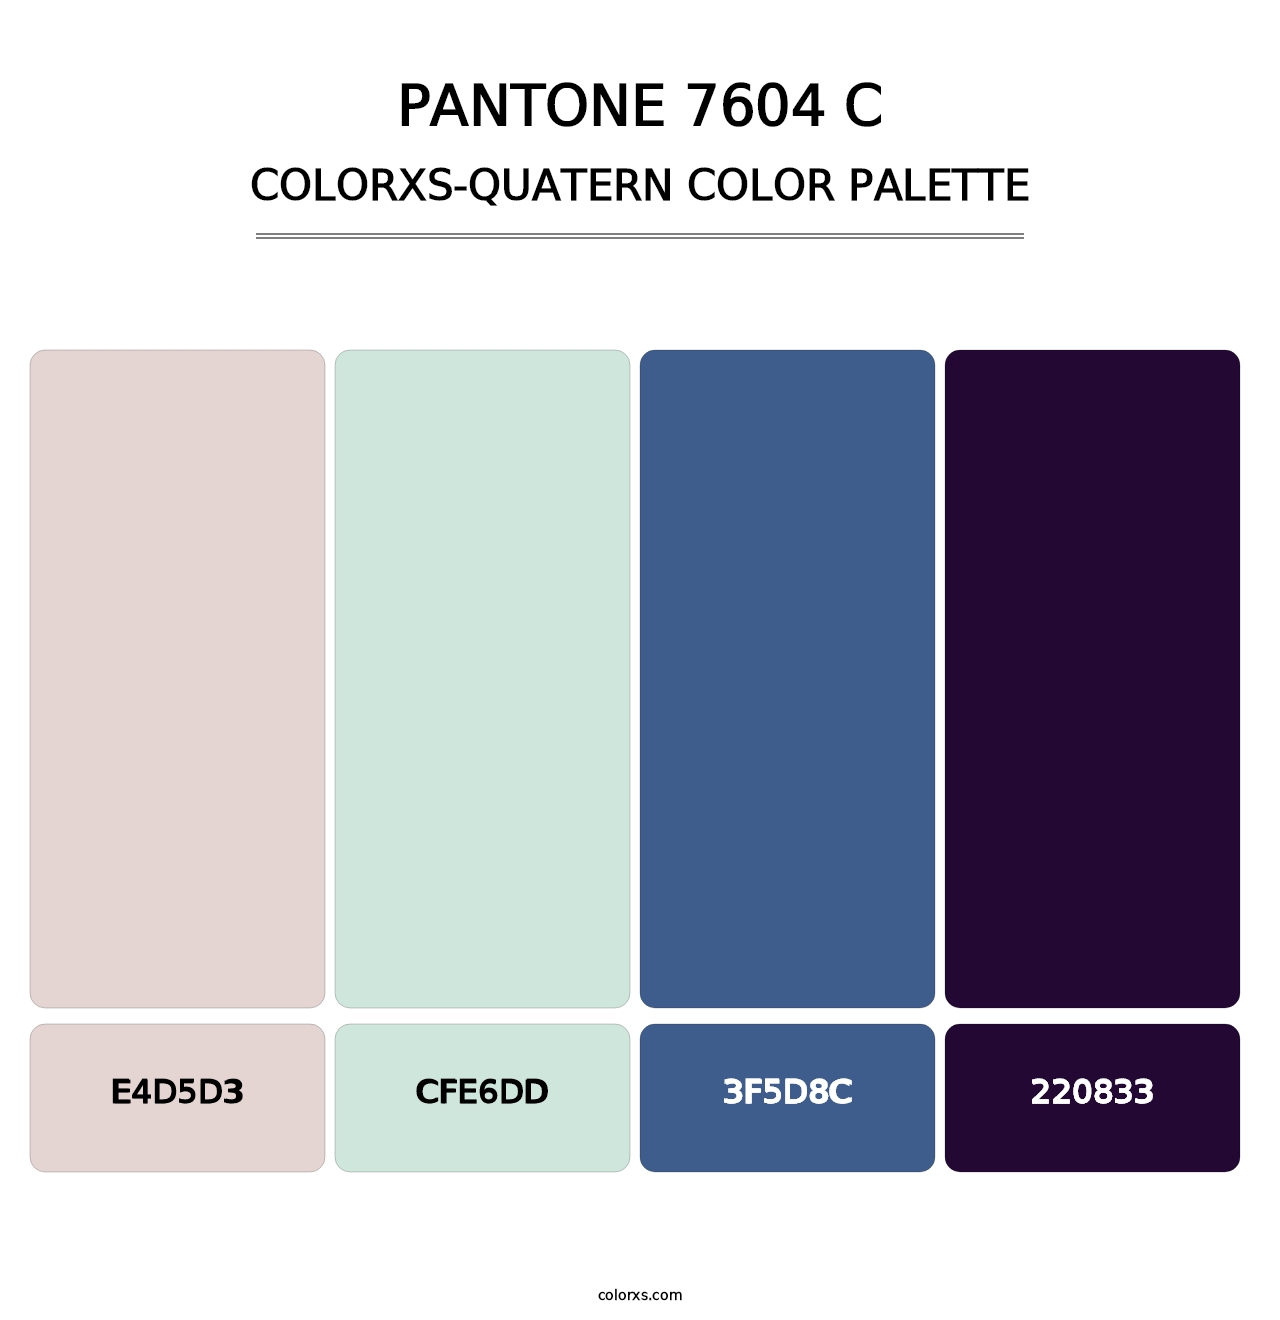 PANTONE 7604 C - Colorxs Quatern Palette